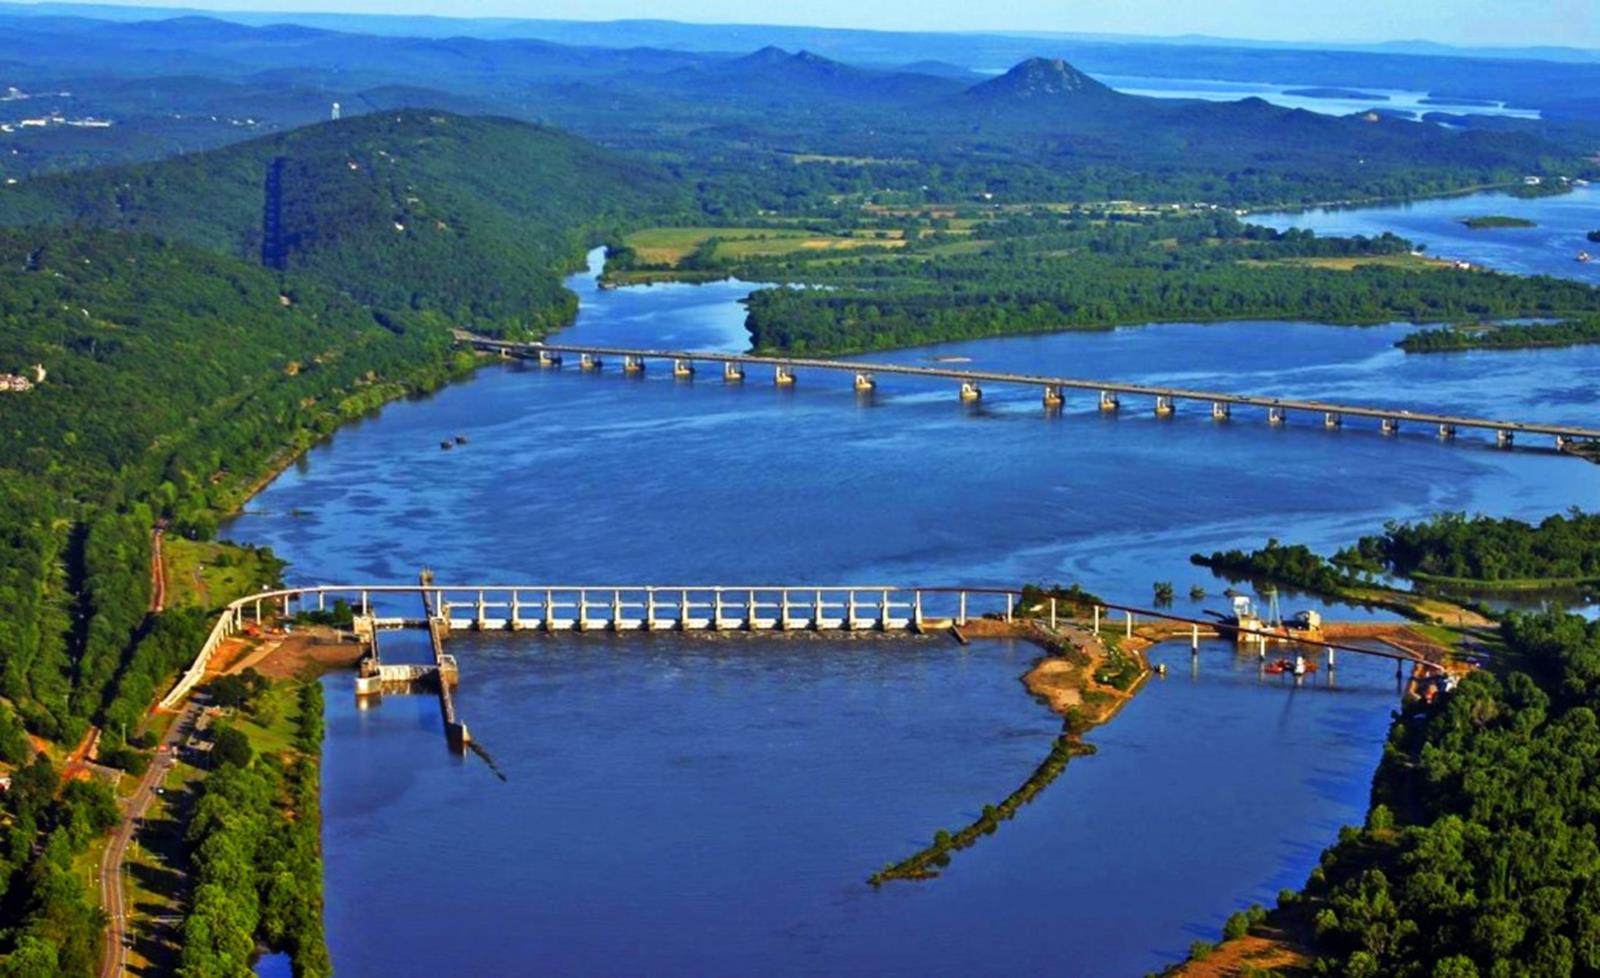 The Big Dam Bridge